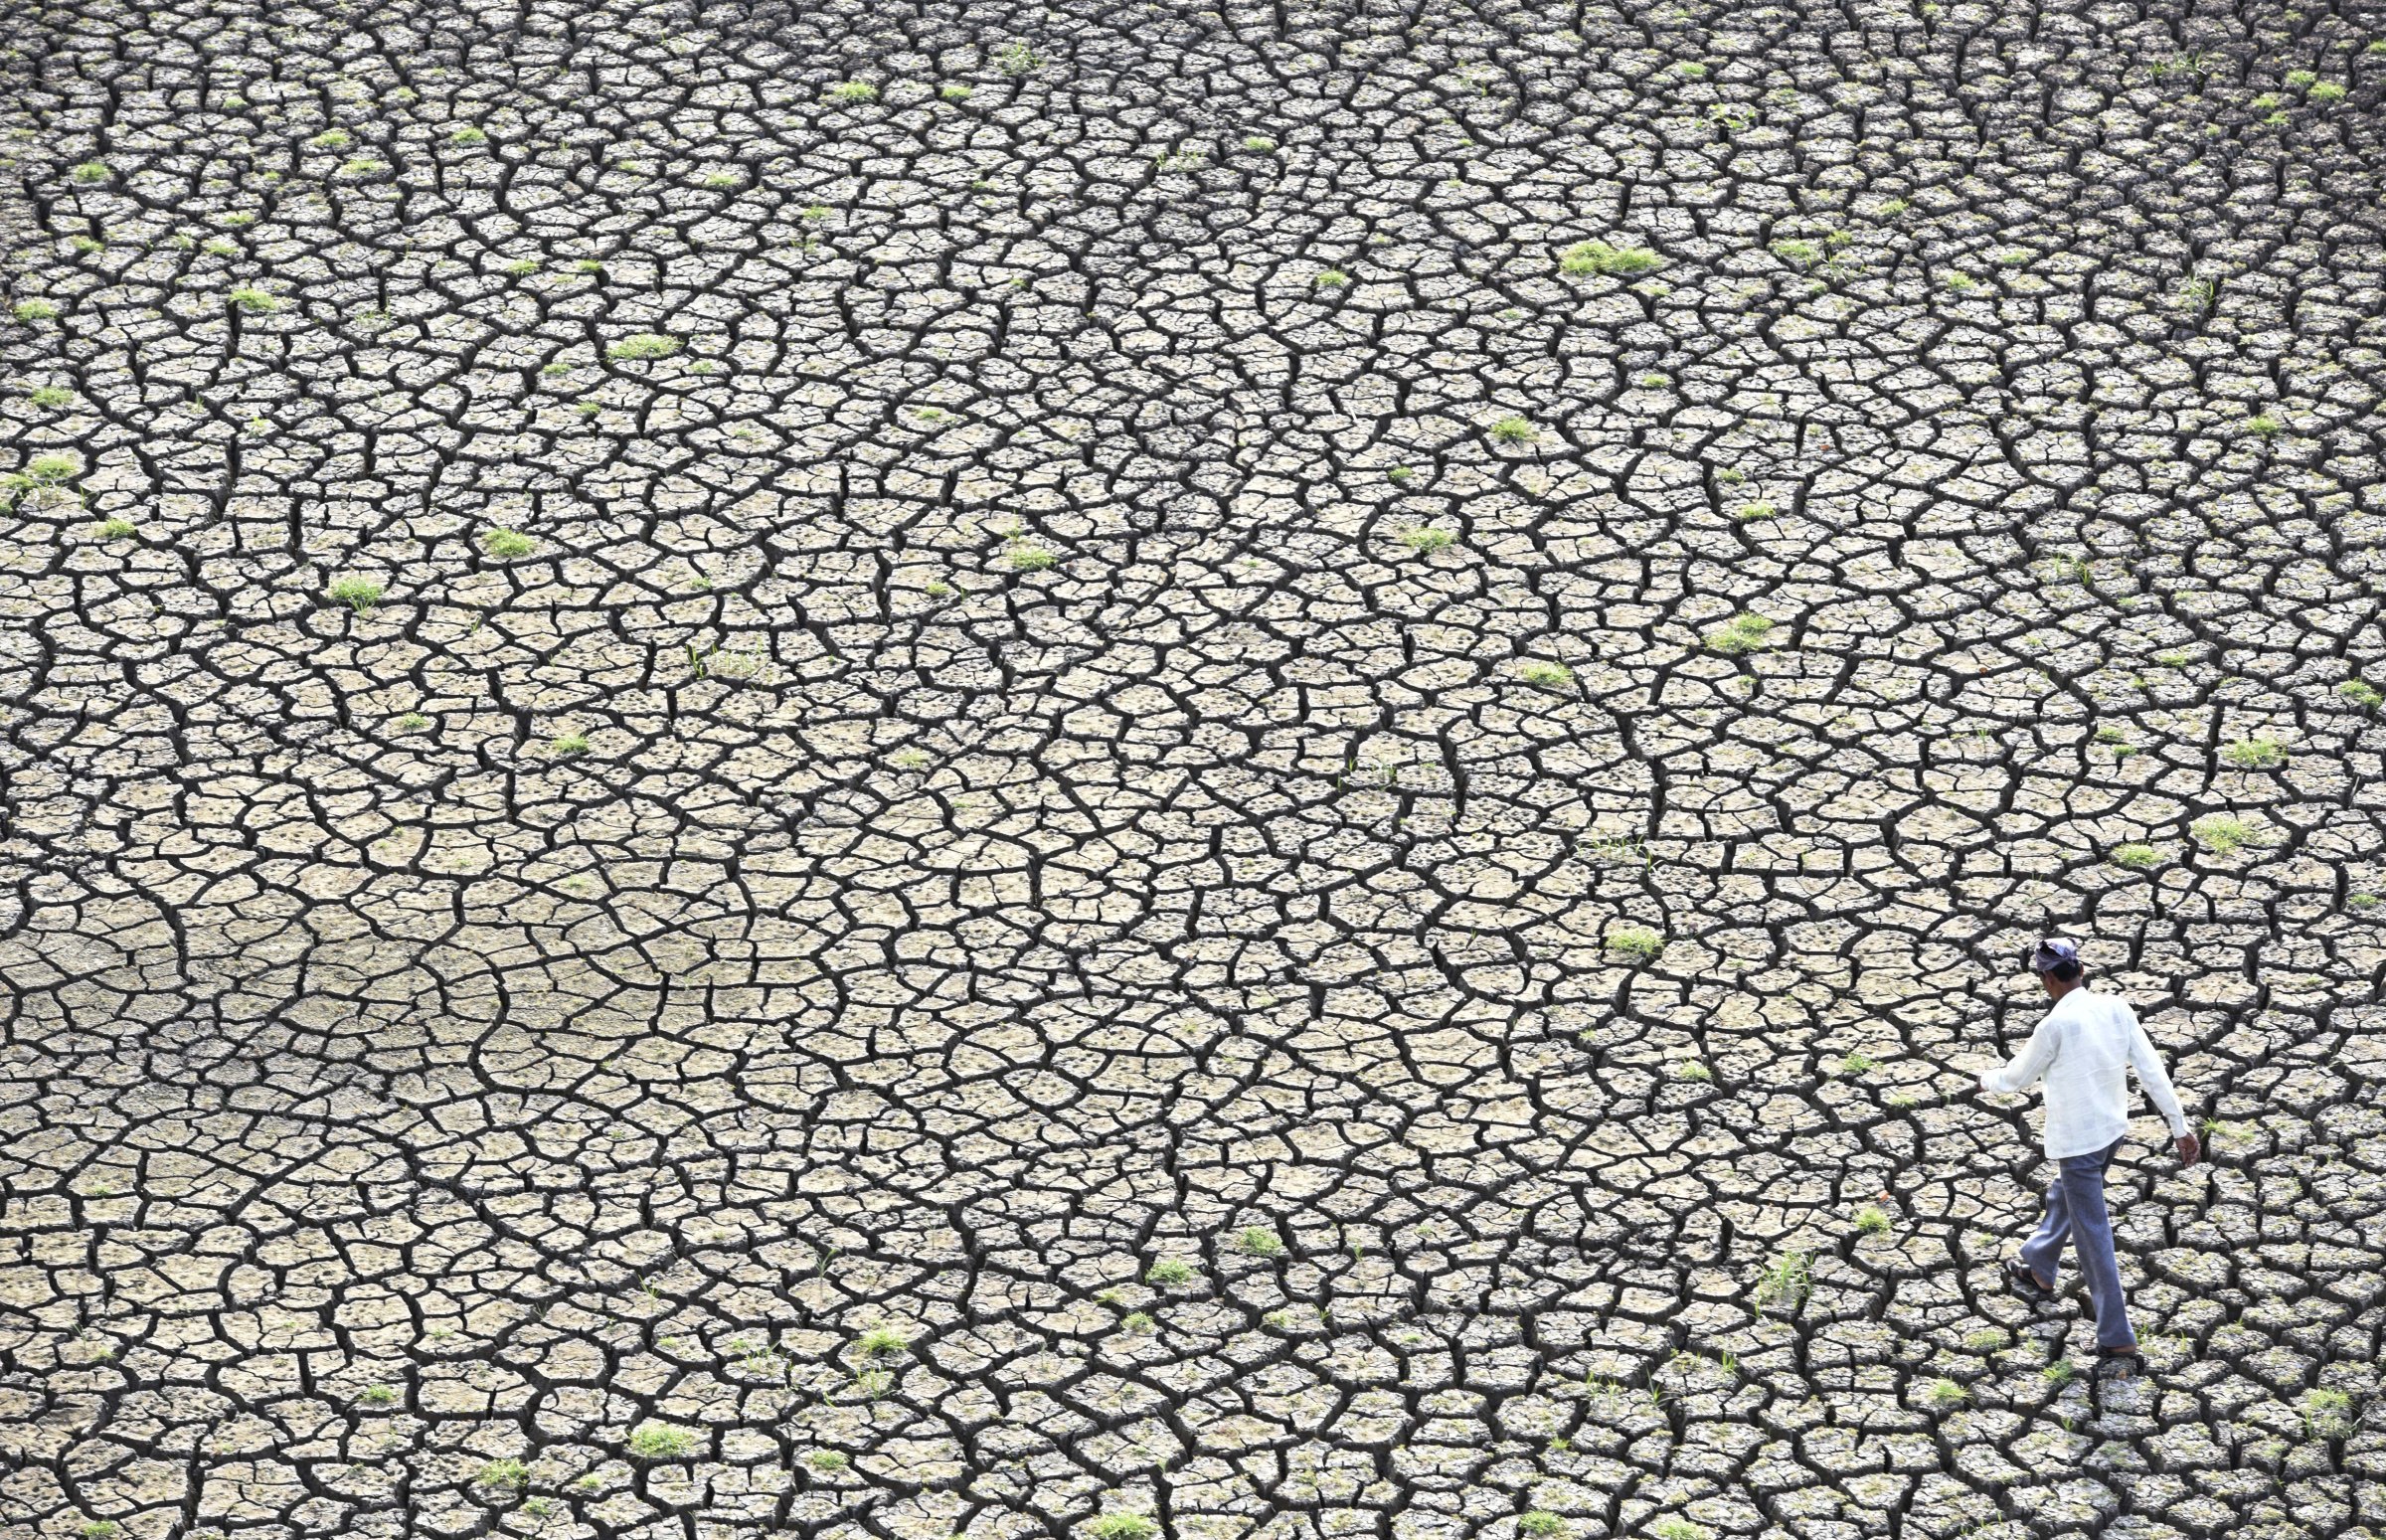 Marathwada Drought: Water Crisis In Latur